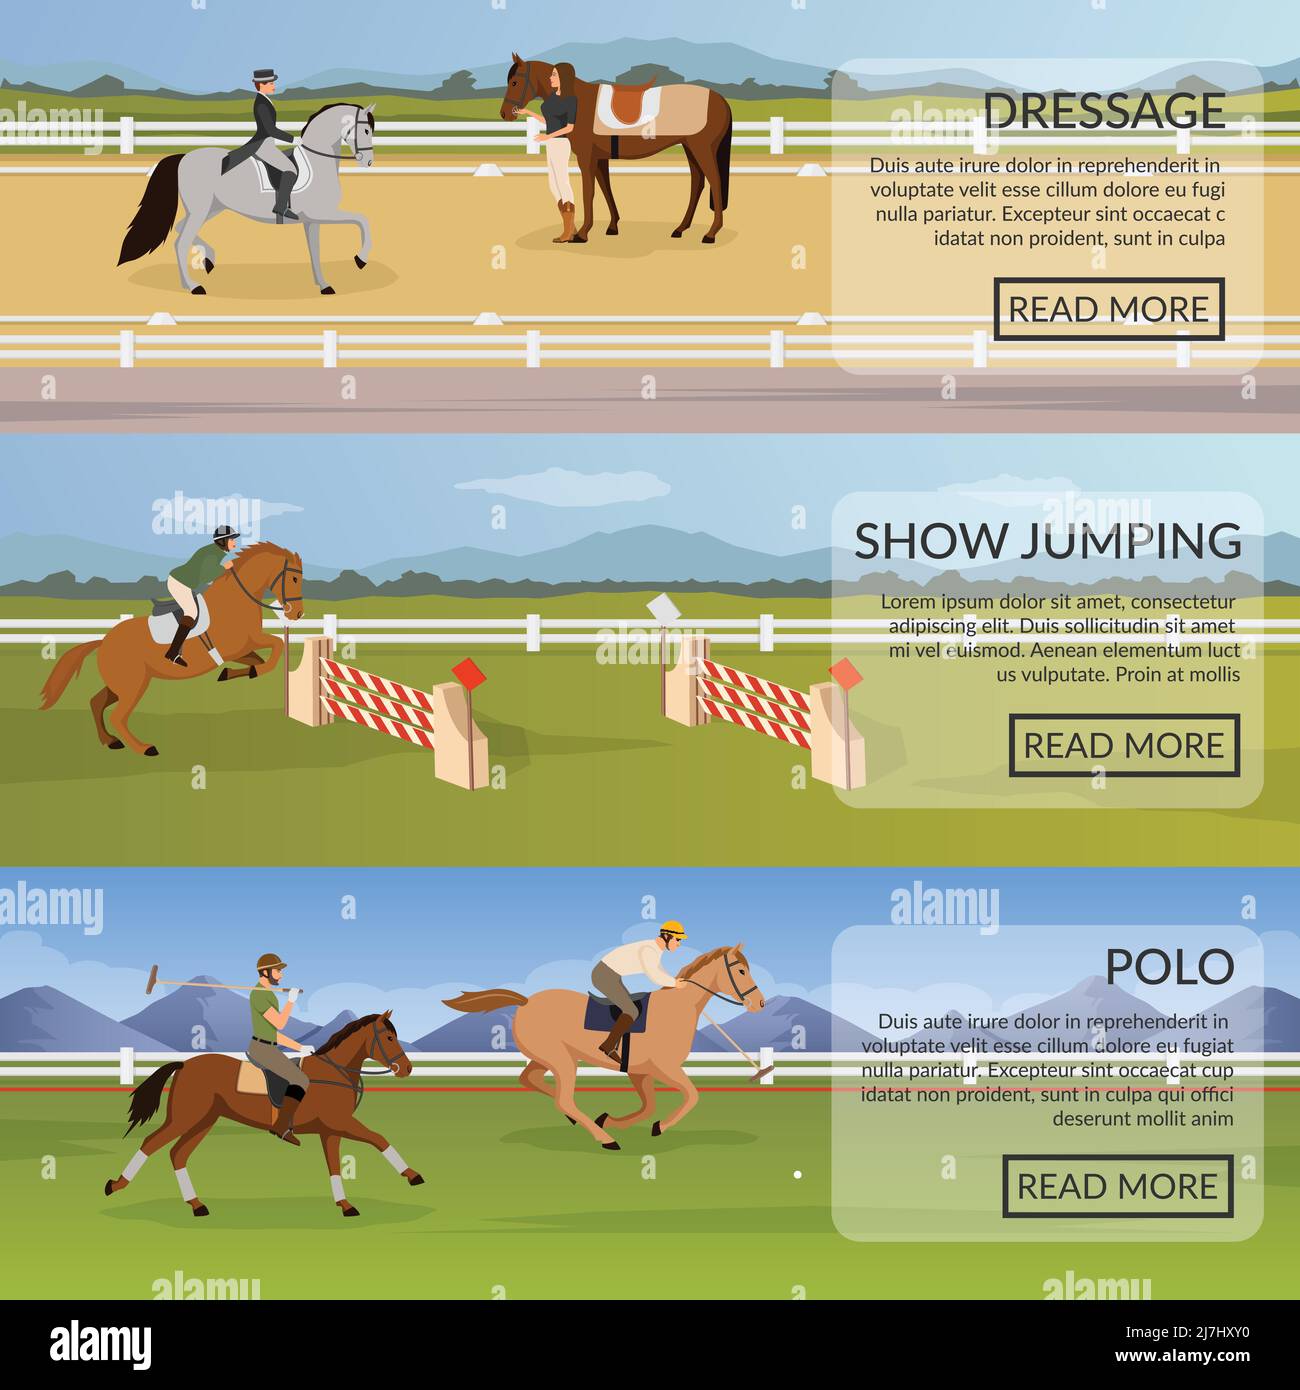 Infographie De Sport équestre Harnais De Cheval Et équipement De